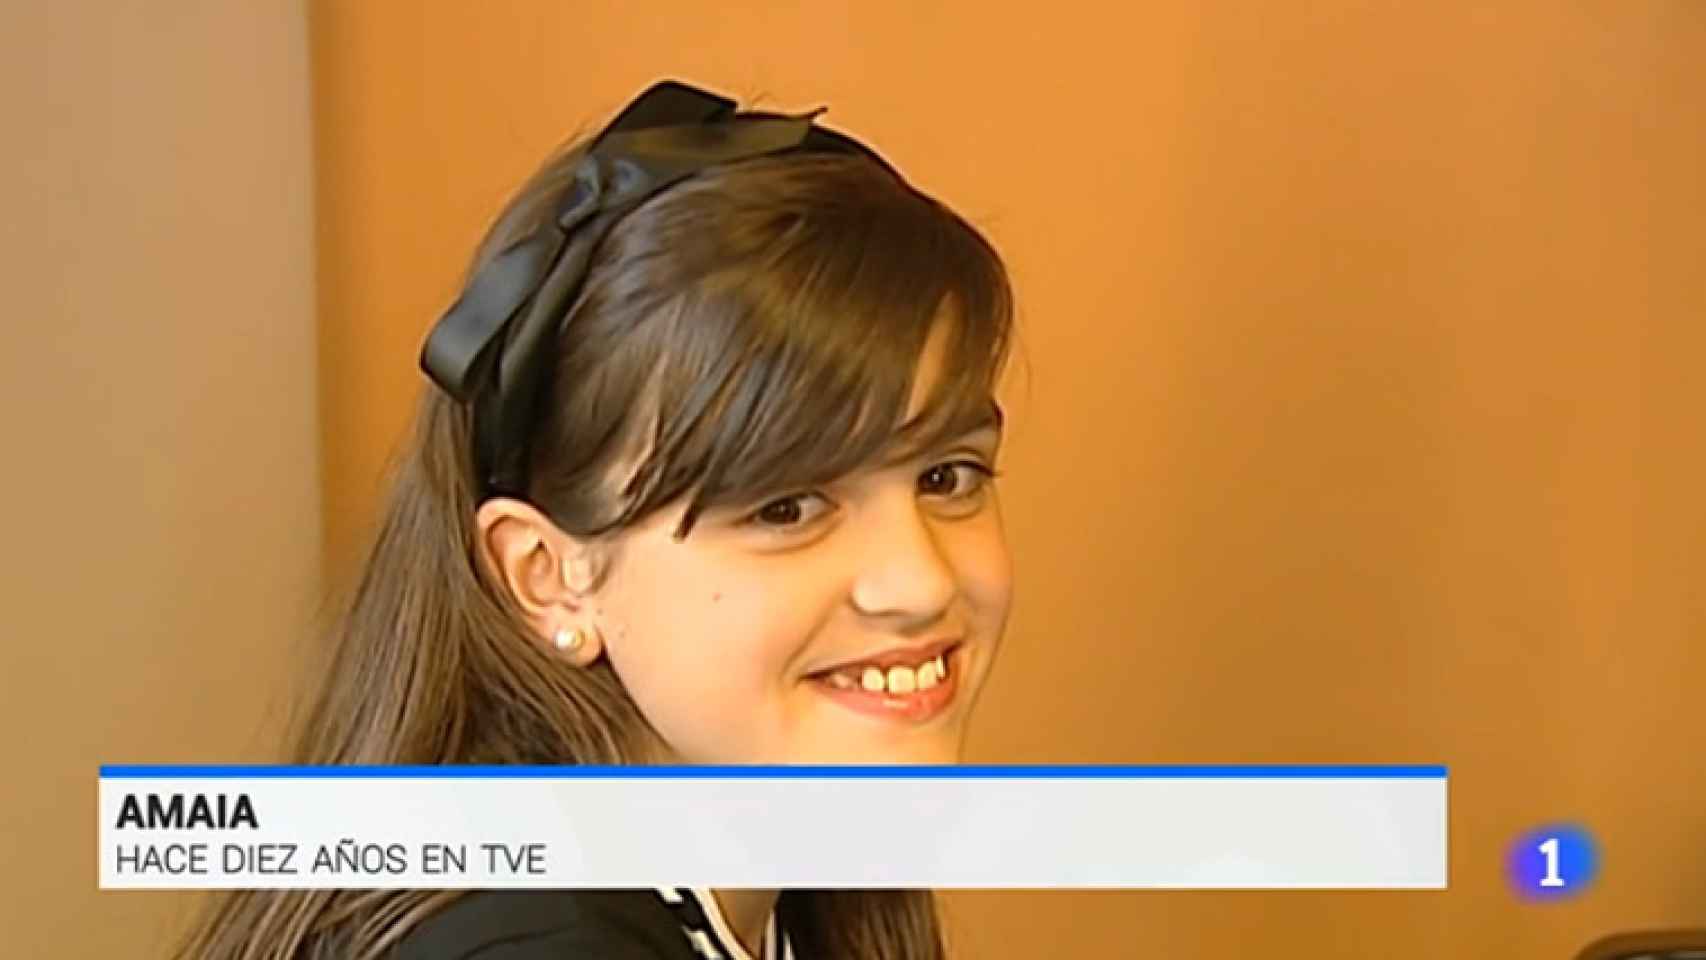 'OT': El informativo de TVE rescata a la Amaia de hace 10 años